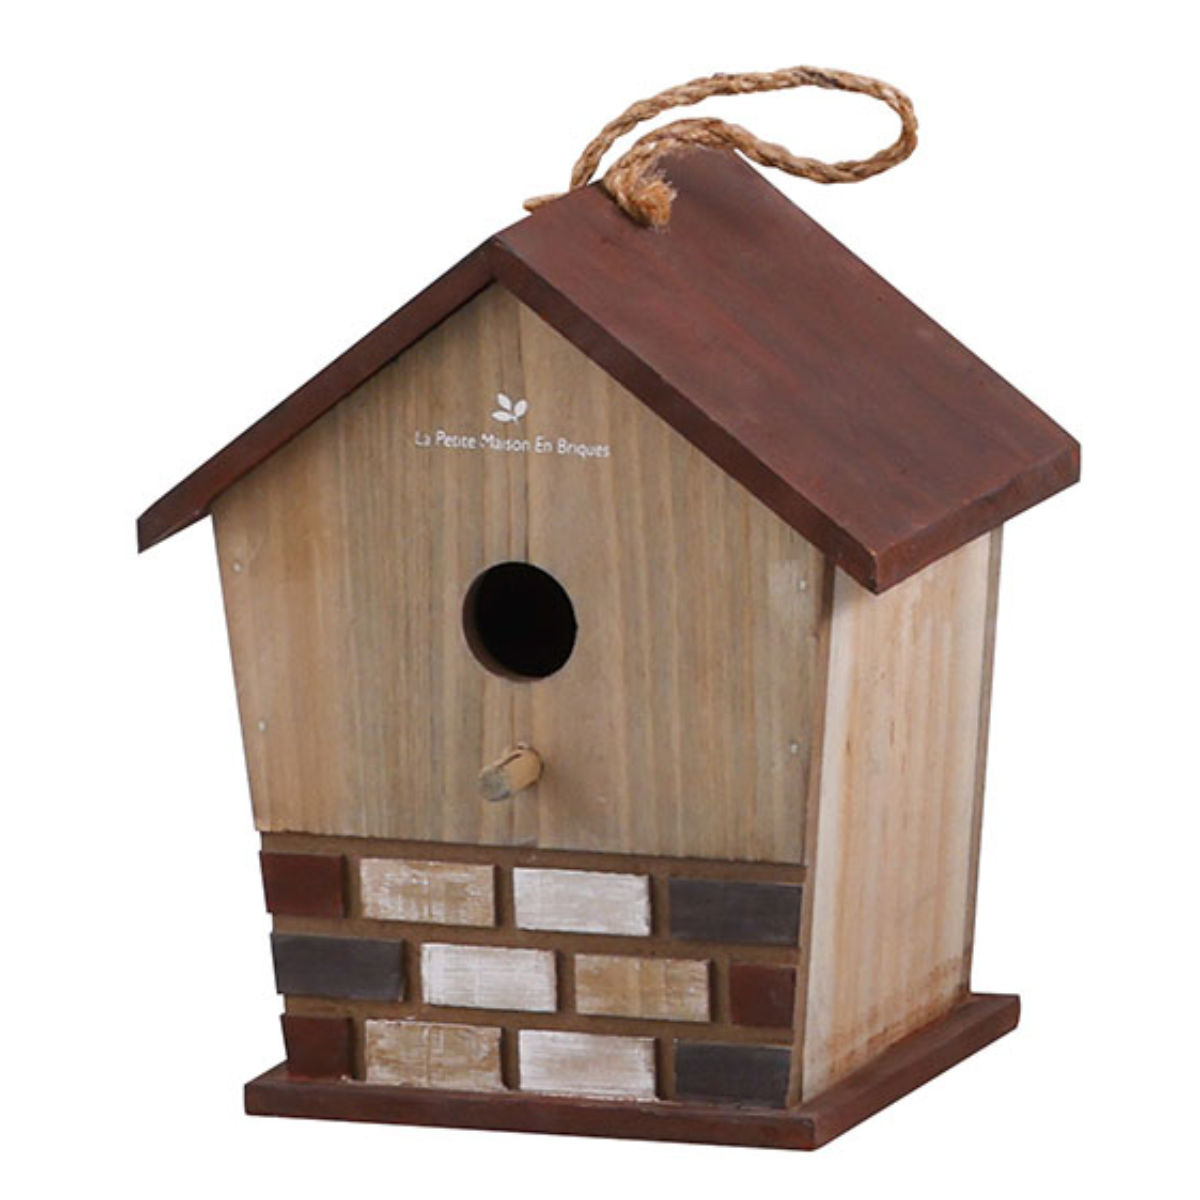 小鳥の巣箱NIDO MINI巣箱 フック付ケージに掛けるだけの鳥の巣箱 簡単設置ペット用品鳥の巣箱 鳥も喜ぶ鳥の巣箱 Fa5127